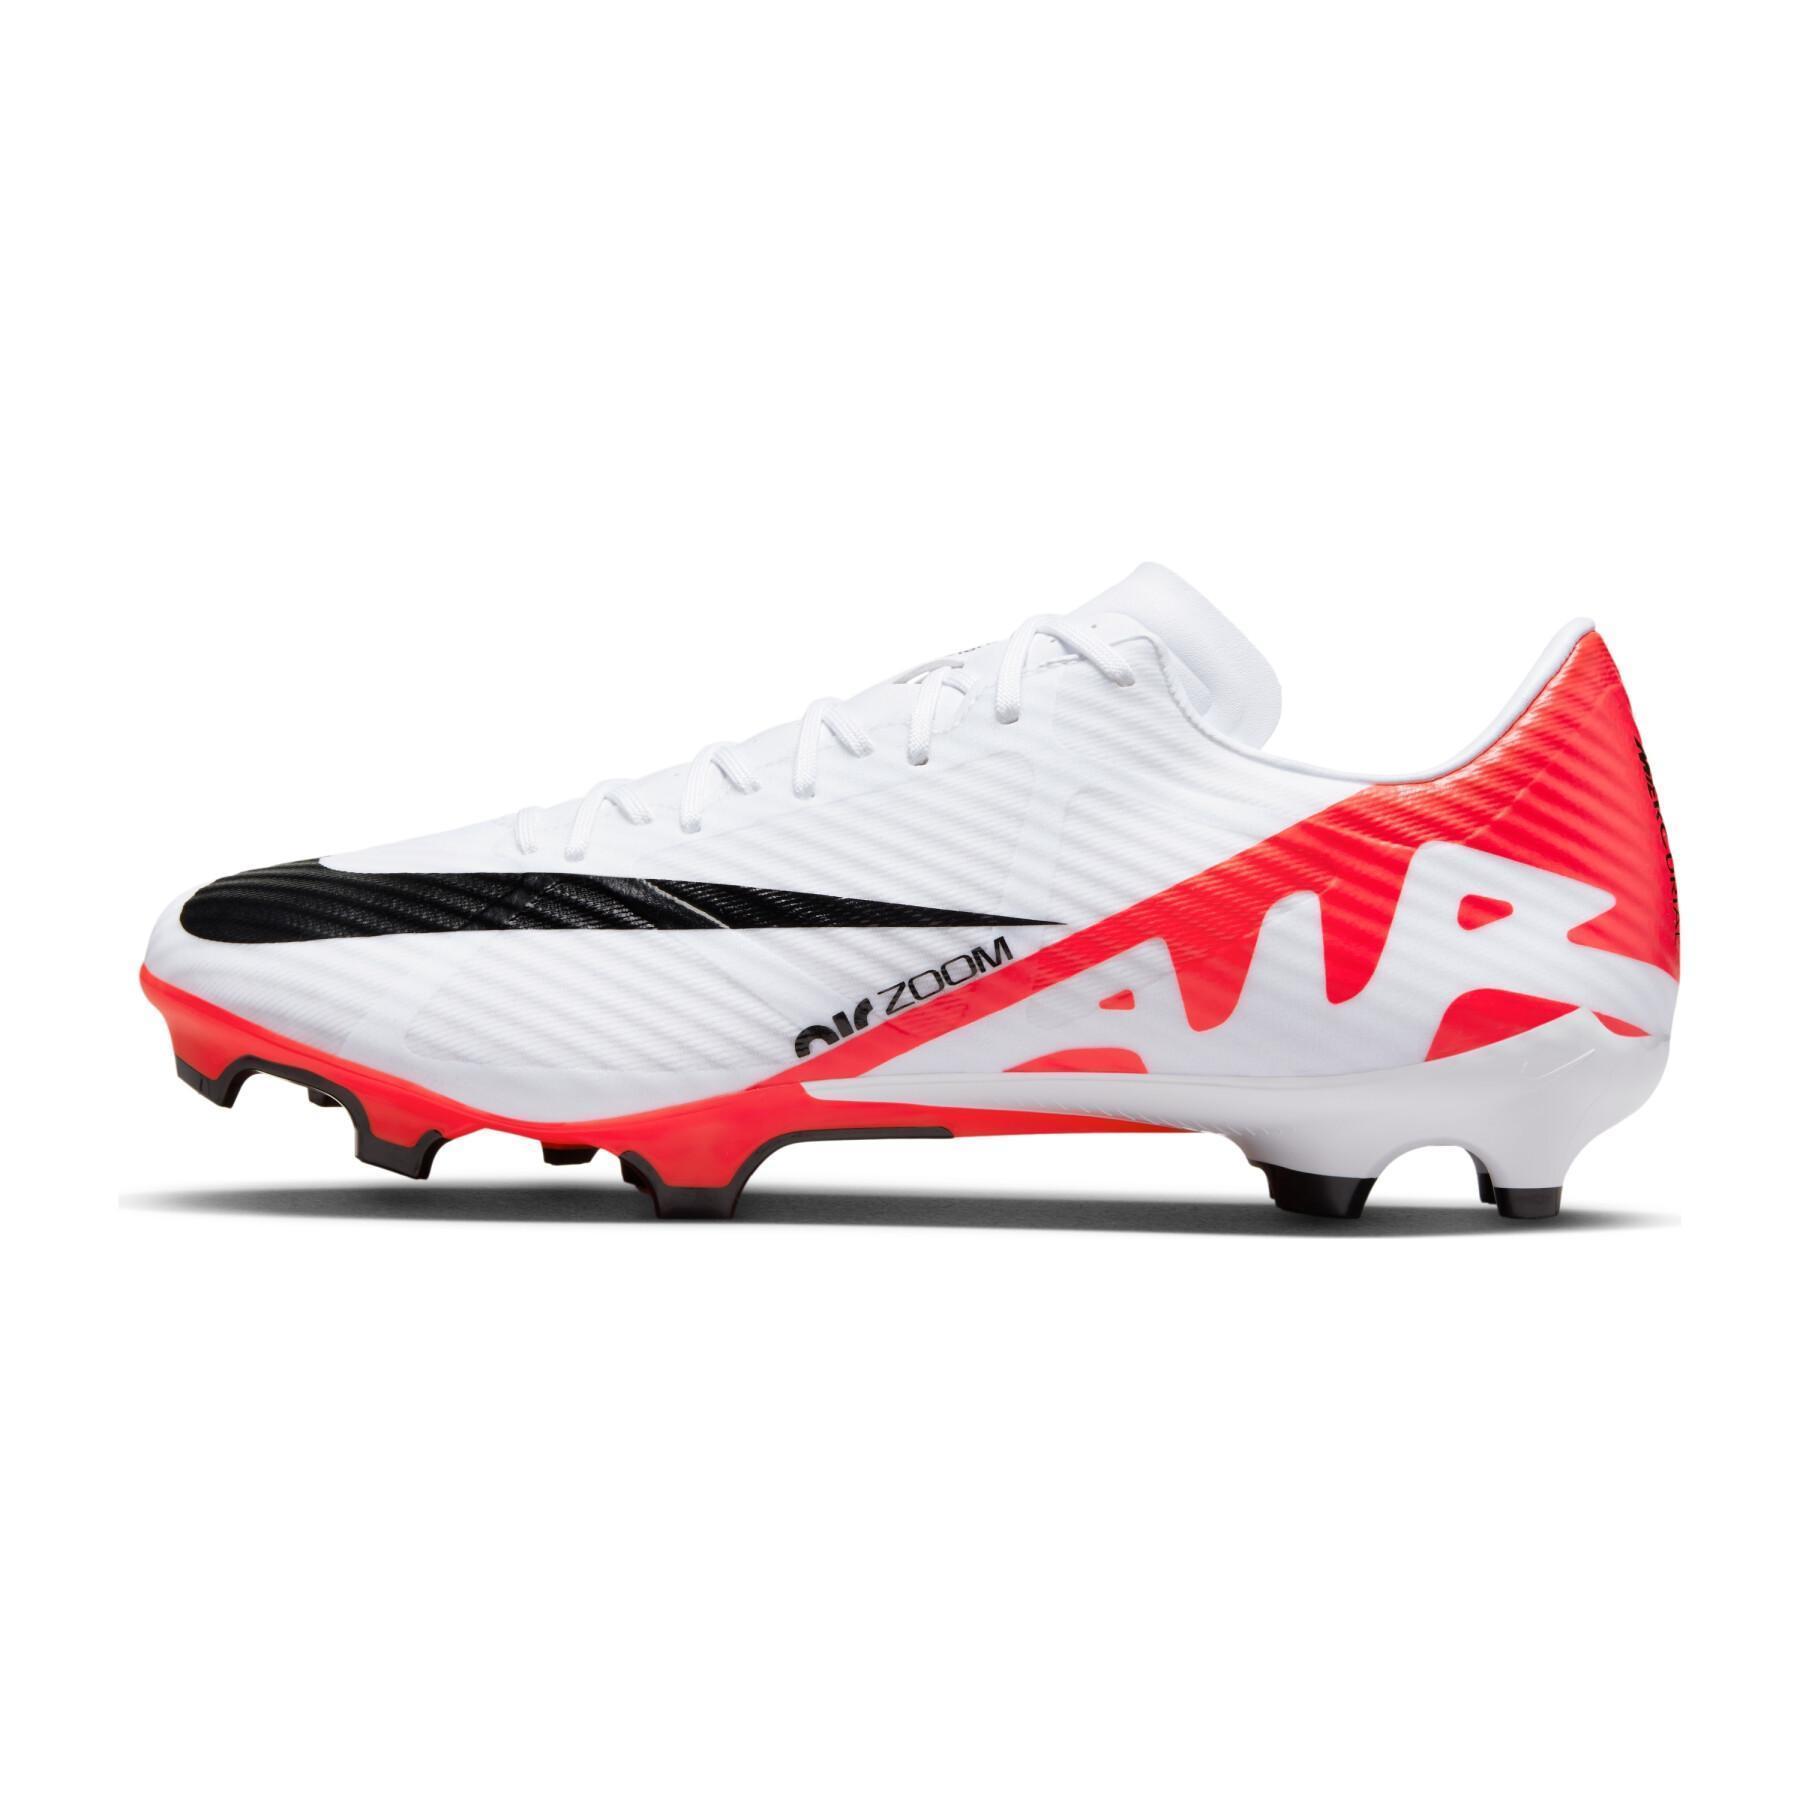 Chaussures de football Nike Mercurial Vapor 15 Academy MG - Ready Pack